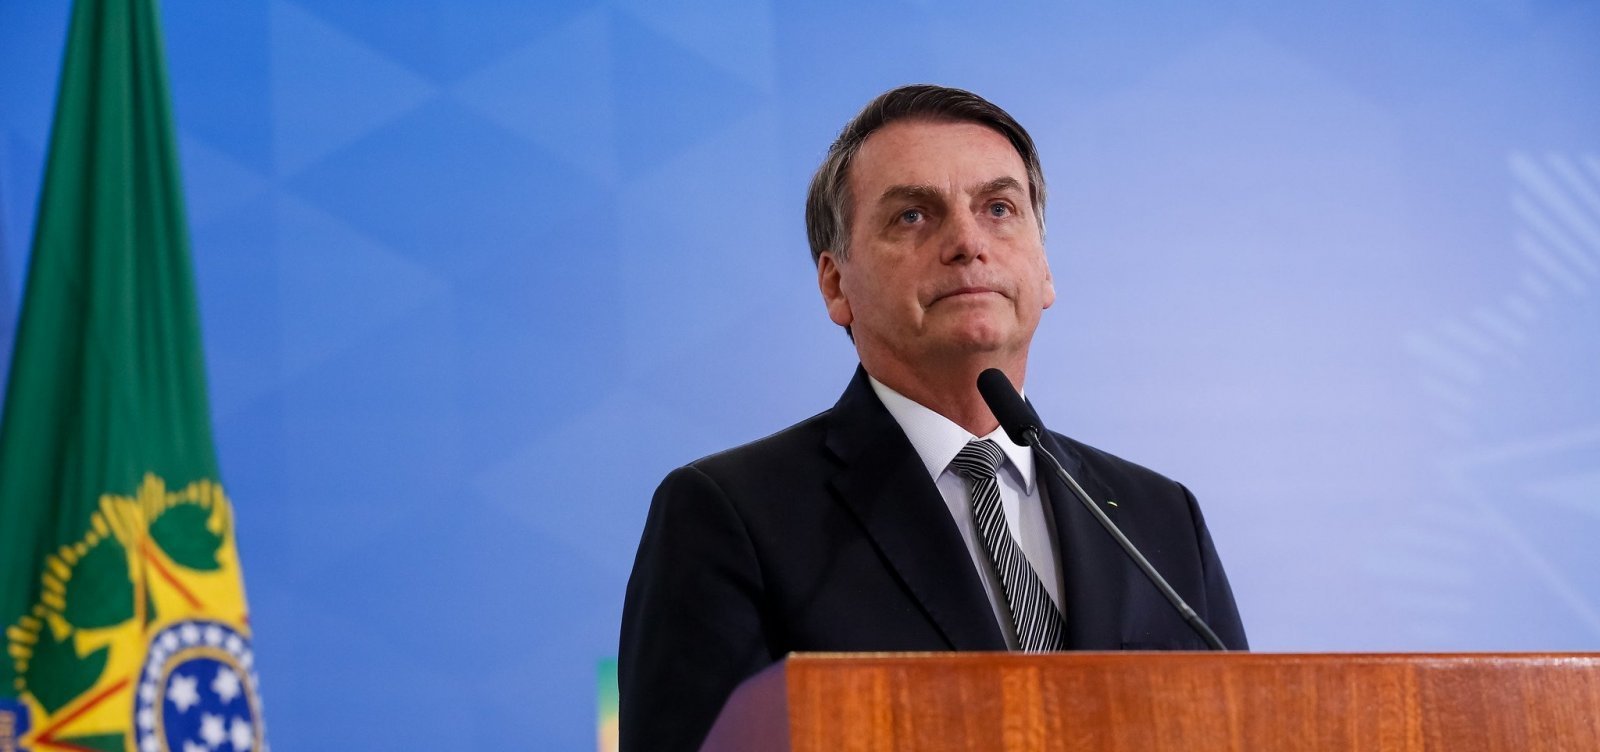 ‘Não existe medicamento comprovado cientificamente’ admite Bolsonaro